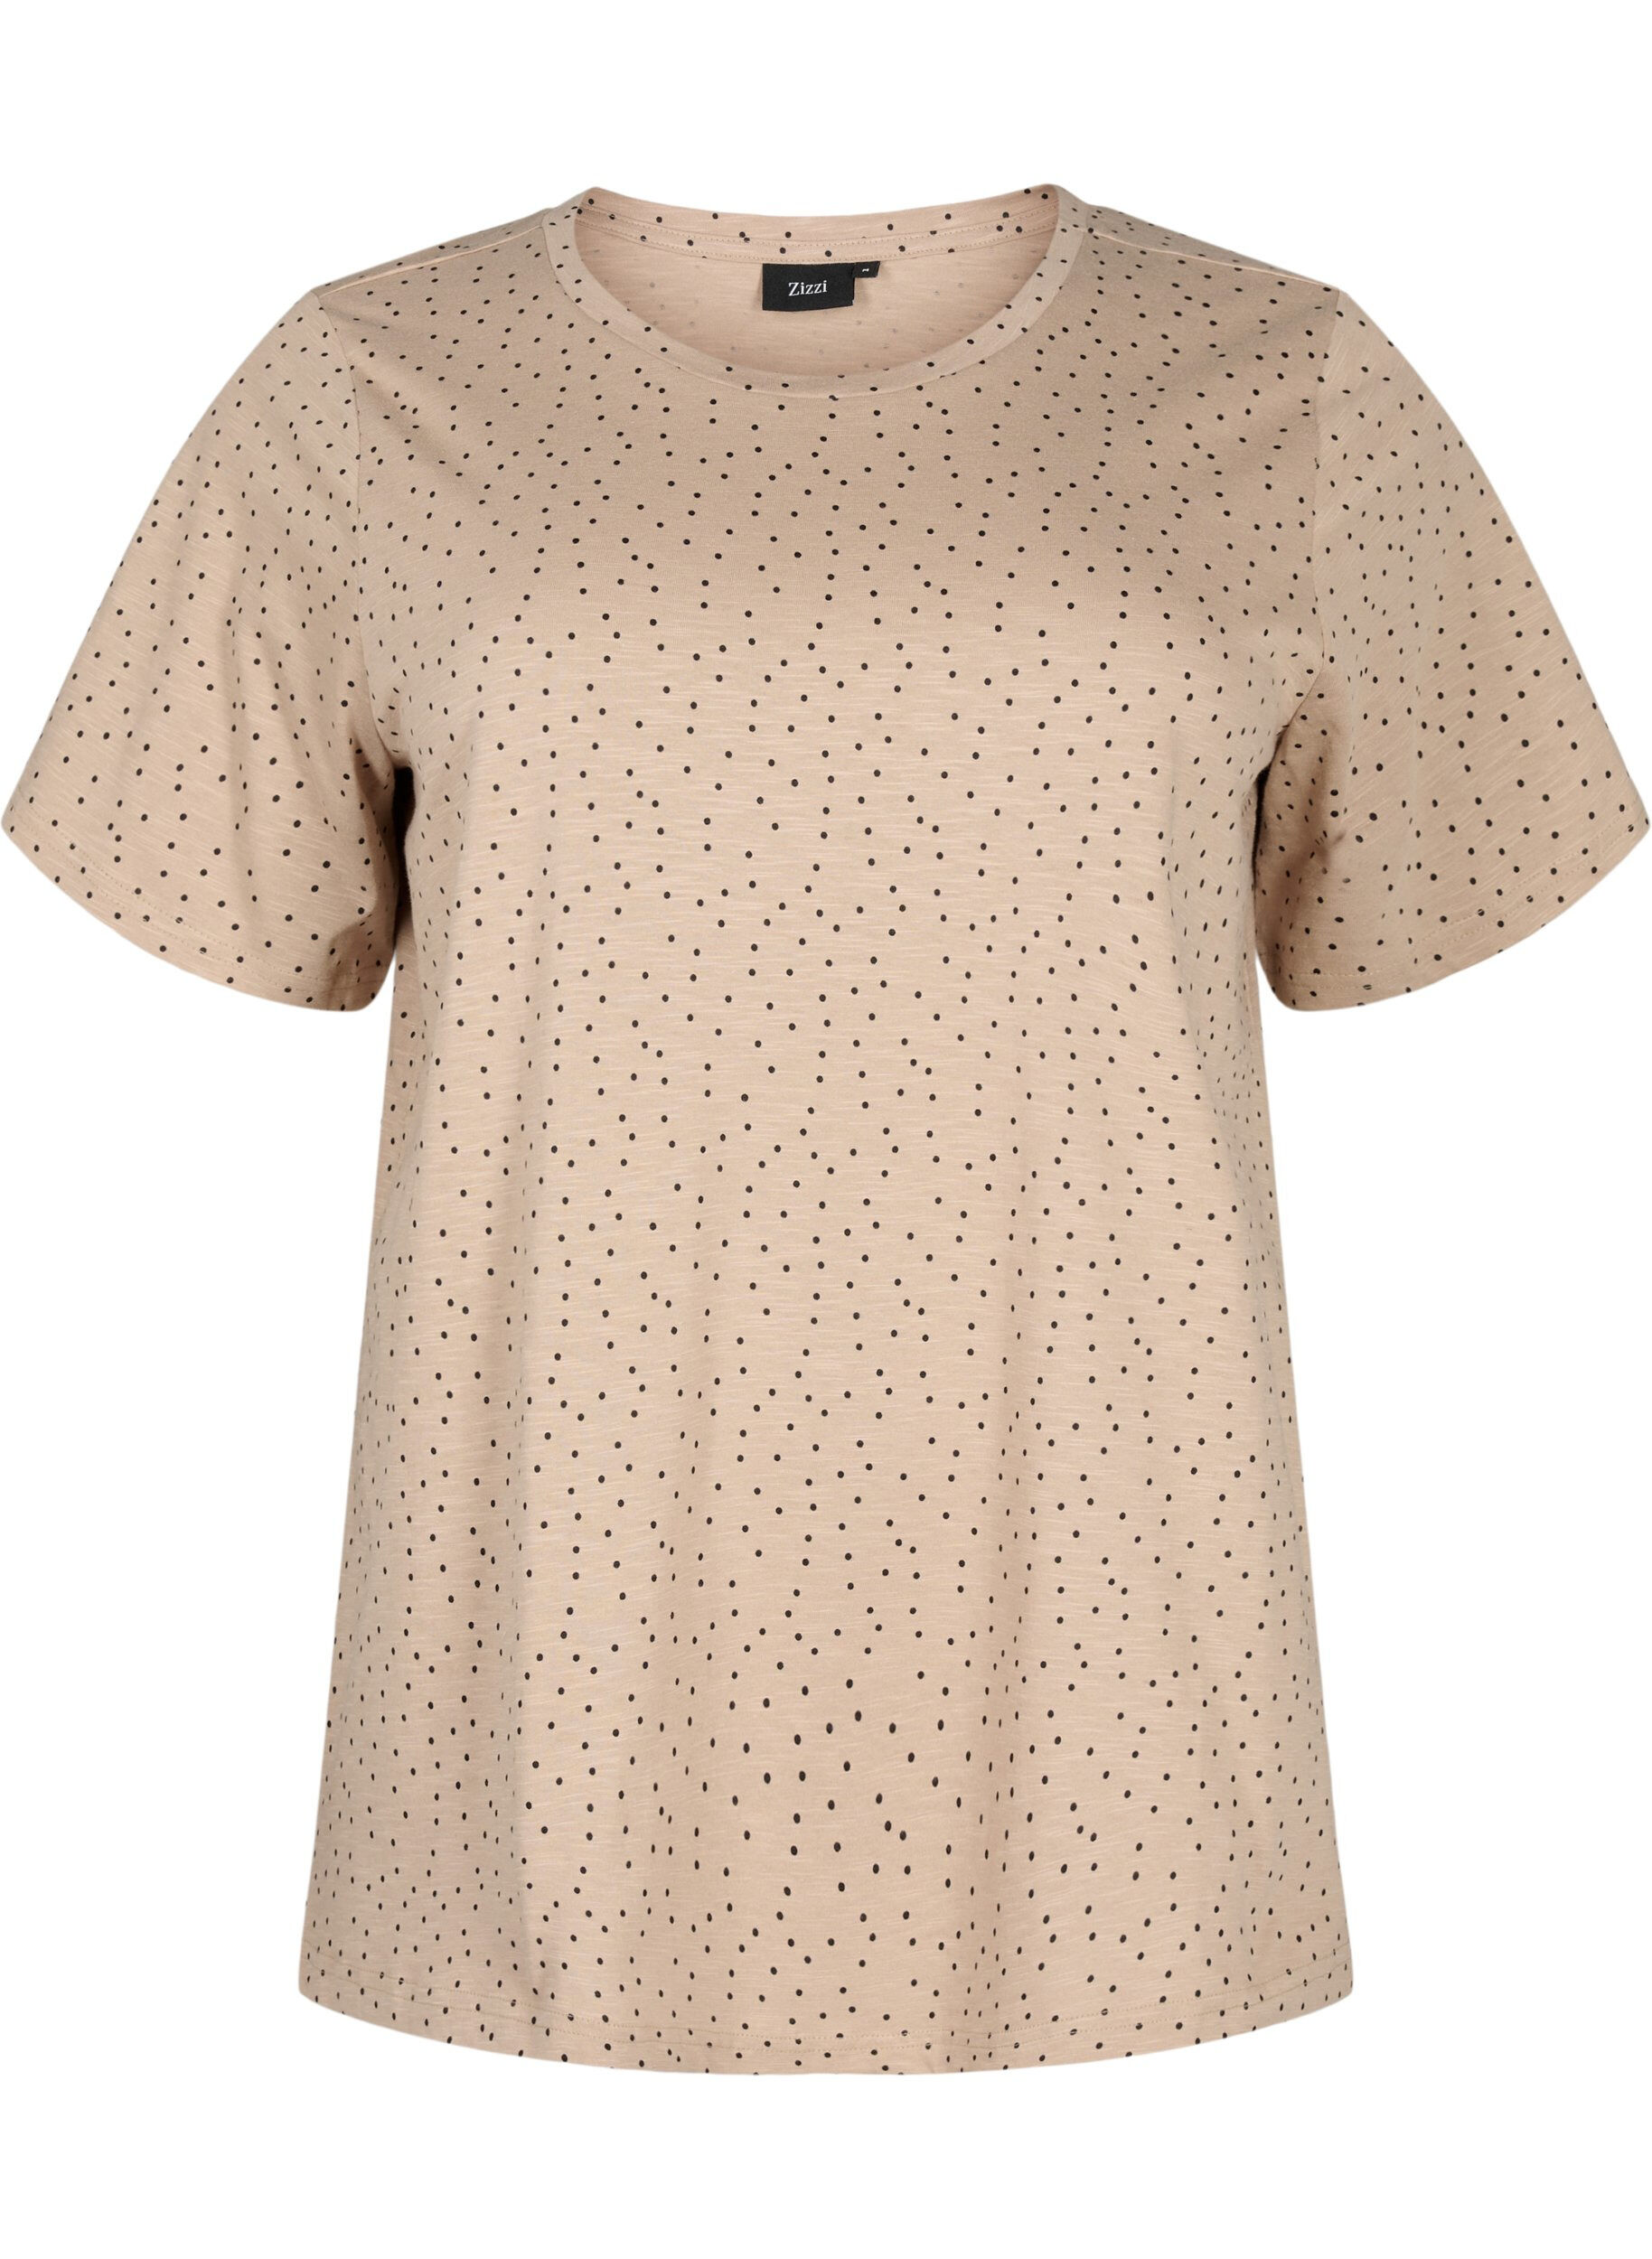 Organic cotton T-shirt with dots - Beige - Sz. 42-60 - Zizzifashion